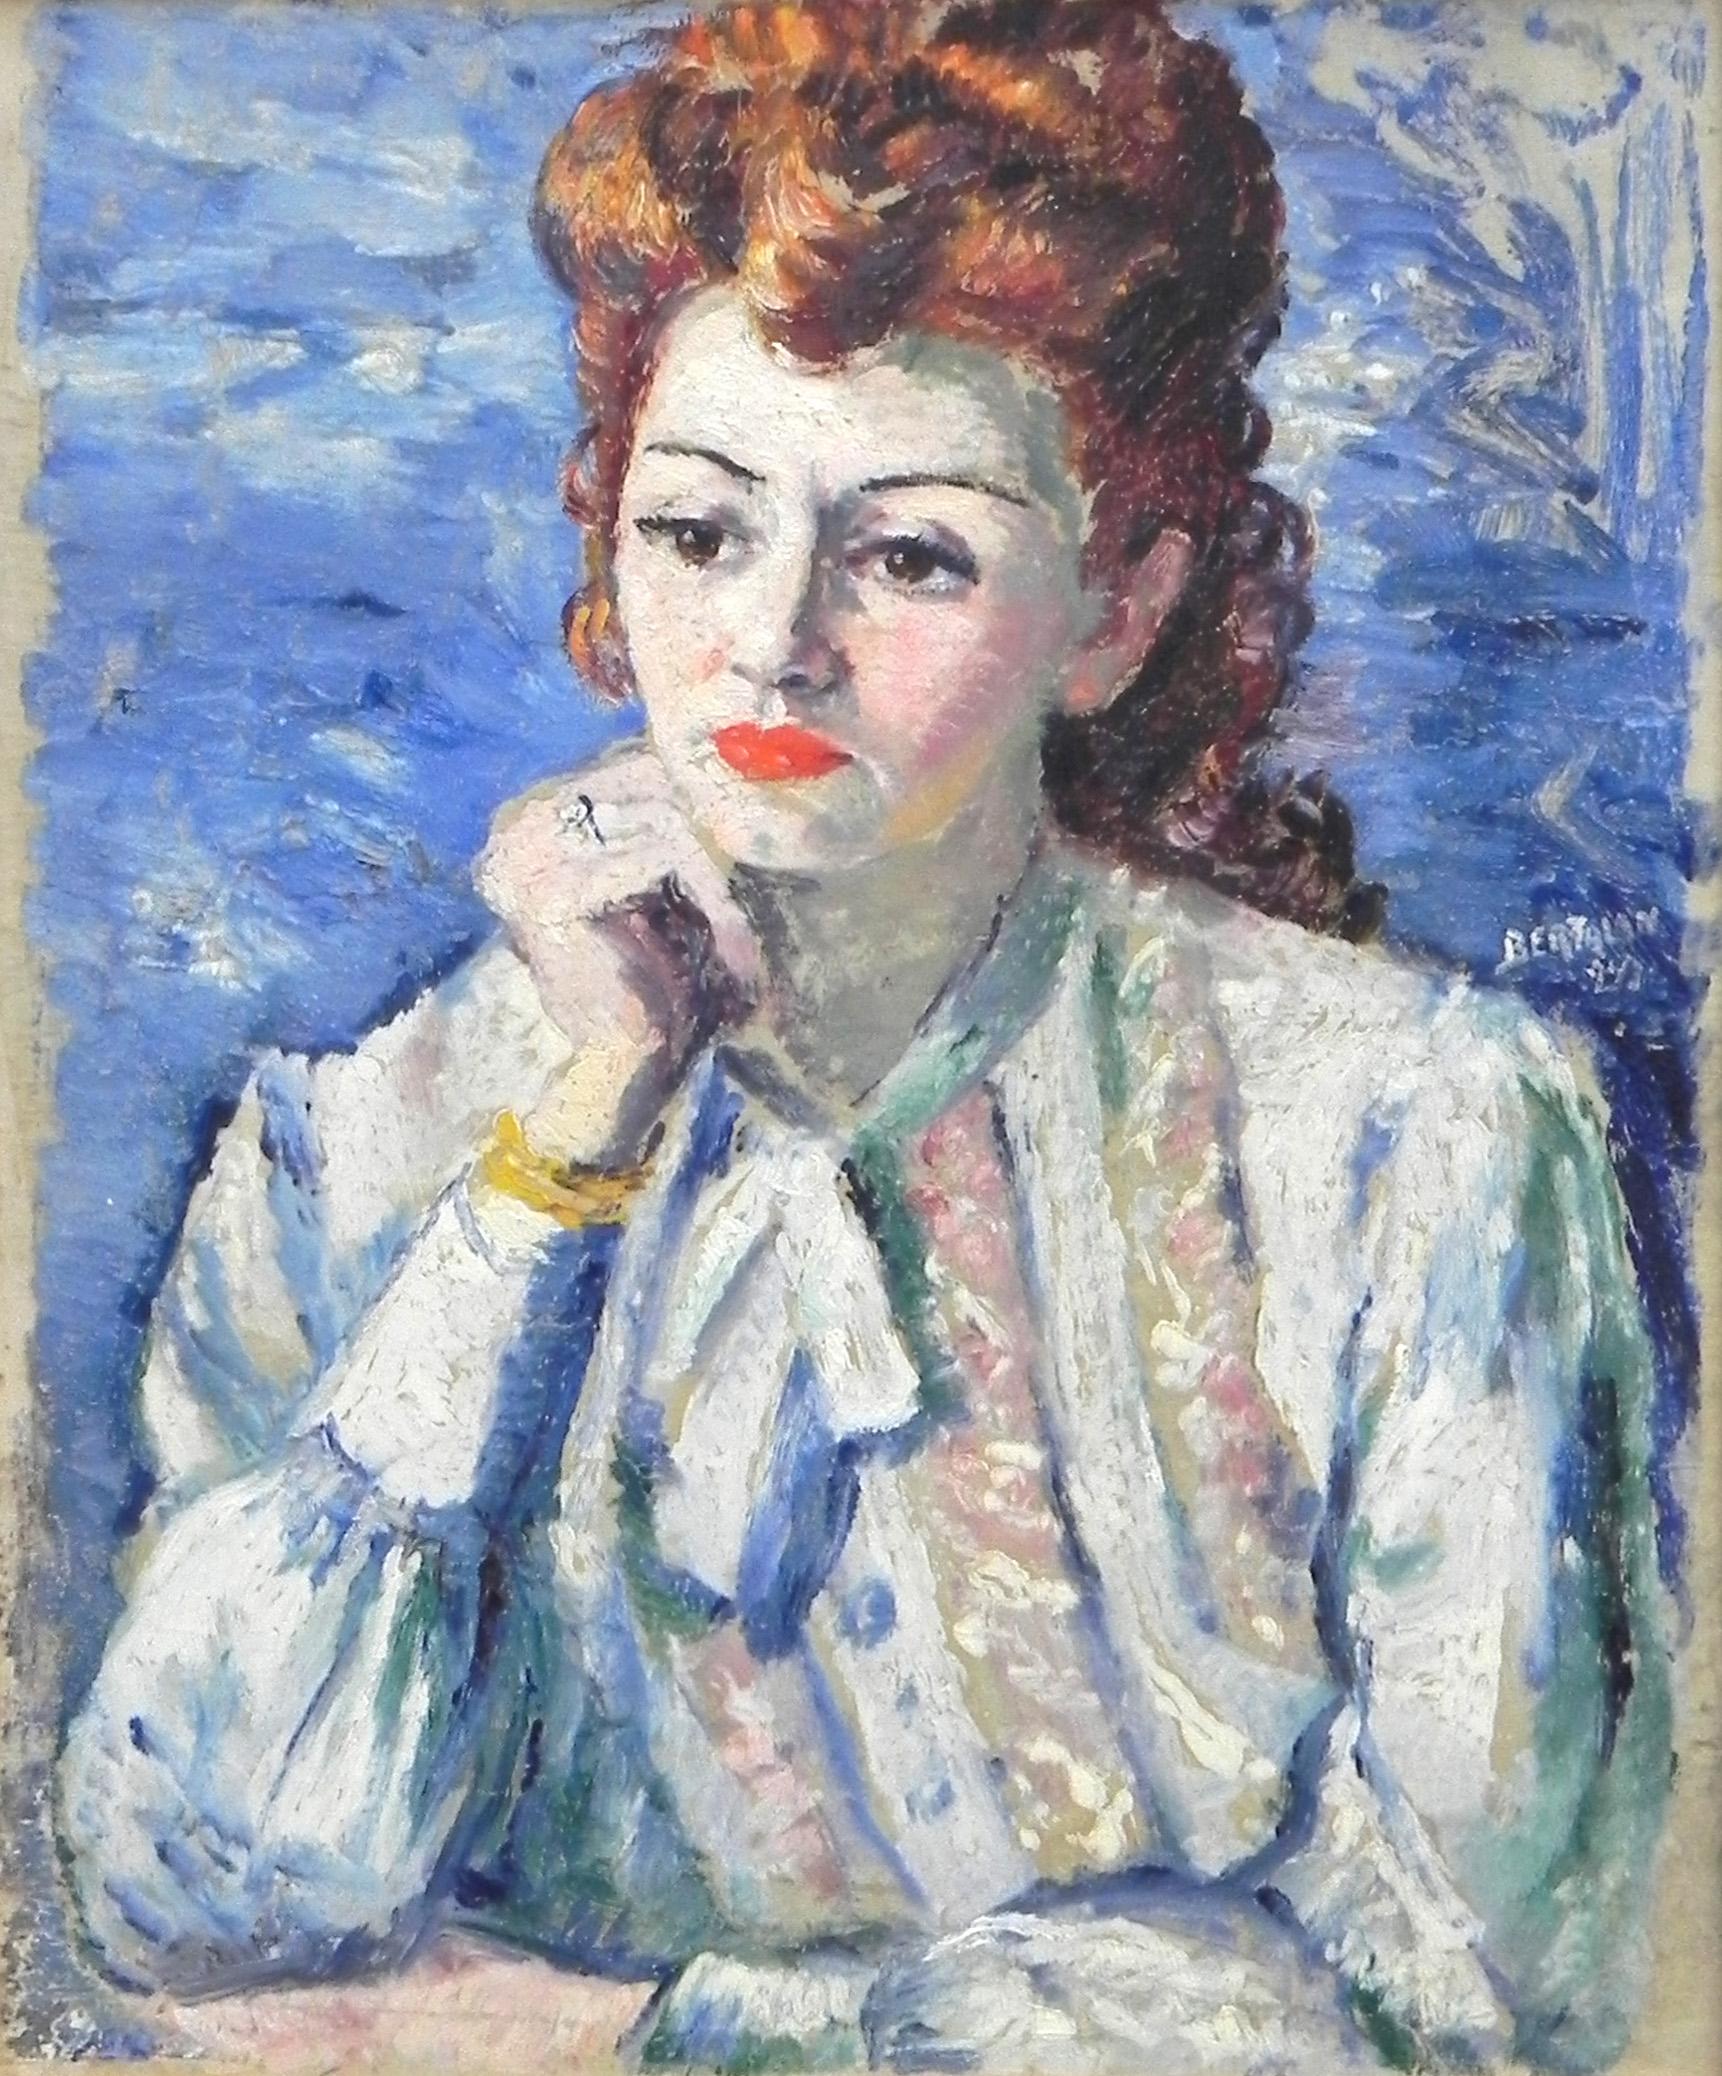 "Femme Rousse Sur Fond Bleu" ist ein original Öl auf Leinwand impressionistisches Porträt einer Frau von Albert Bertalan. Eine rothaarige Dame sitzt mit auf die Wange gepresster Hand nachdenklich vor einem blauen Hintergrund. Das Gemälde ist mit